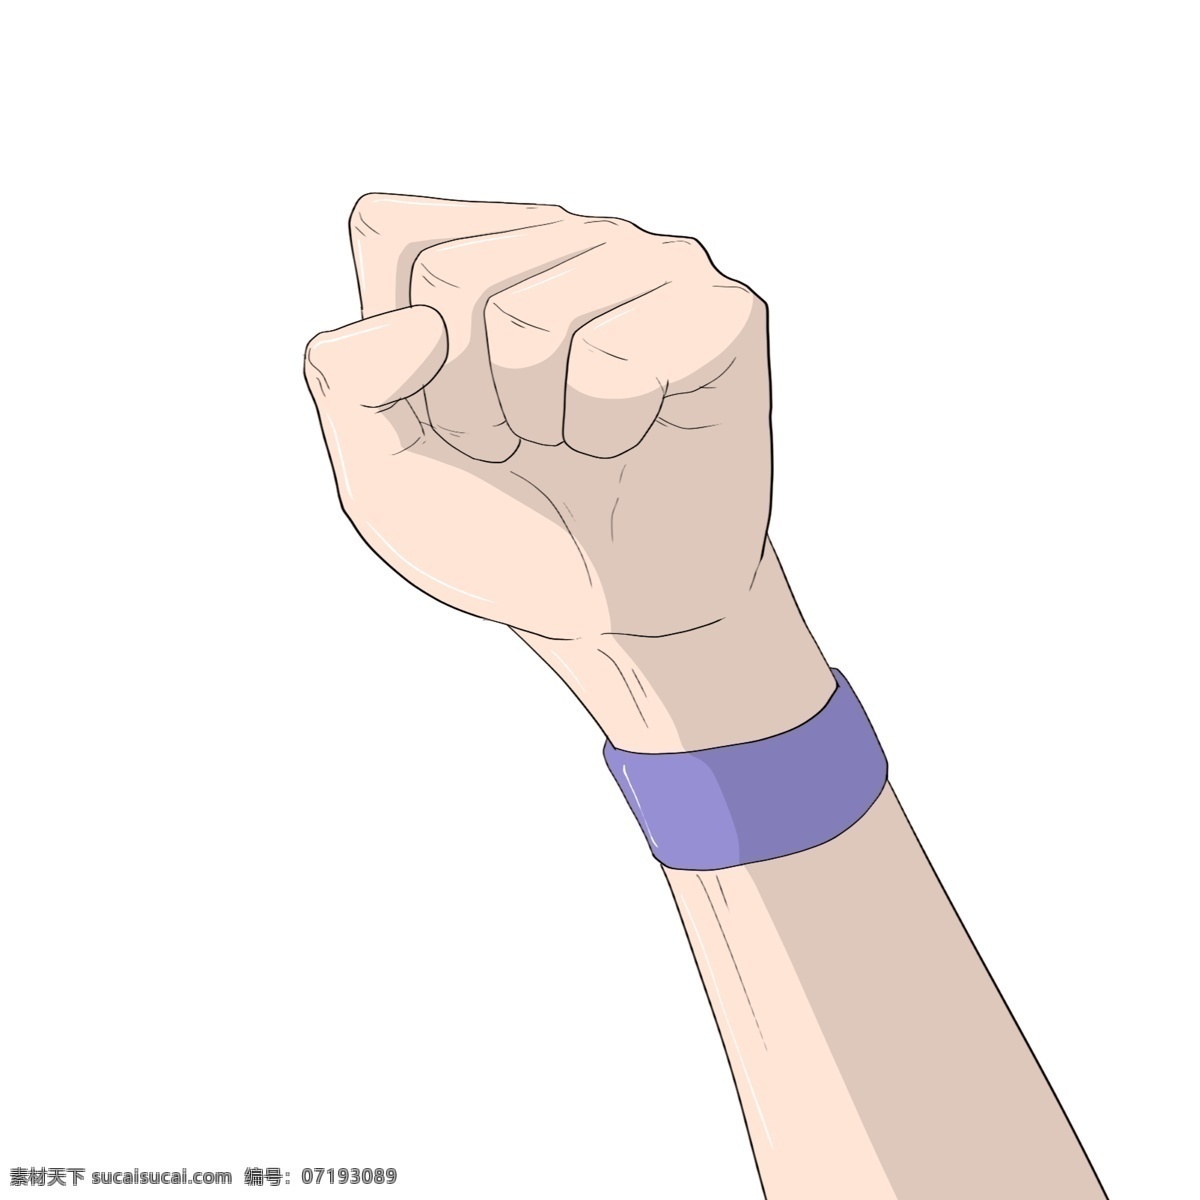 蓝色 手 环 握拳 手势 蓝色的手环 运动手绘 手绘加油手势 手部加油手势 加油动作 握拳加油手势